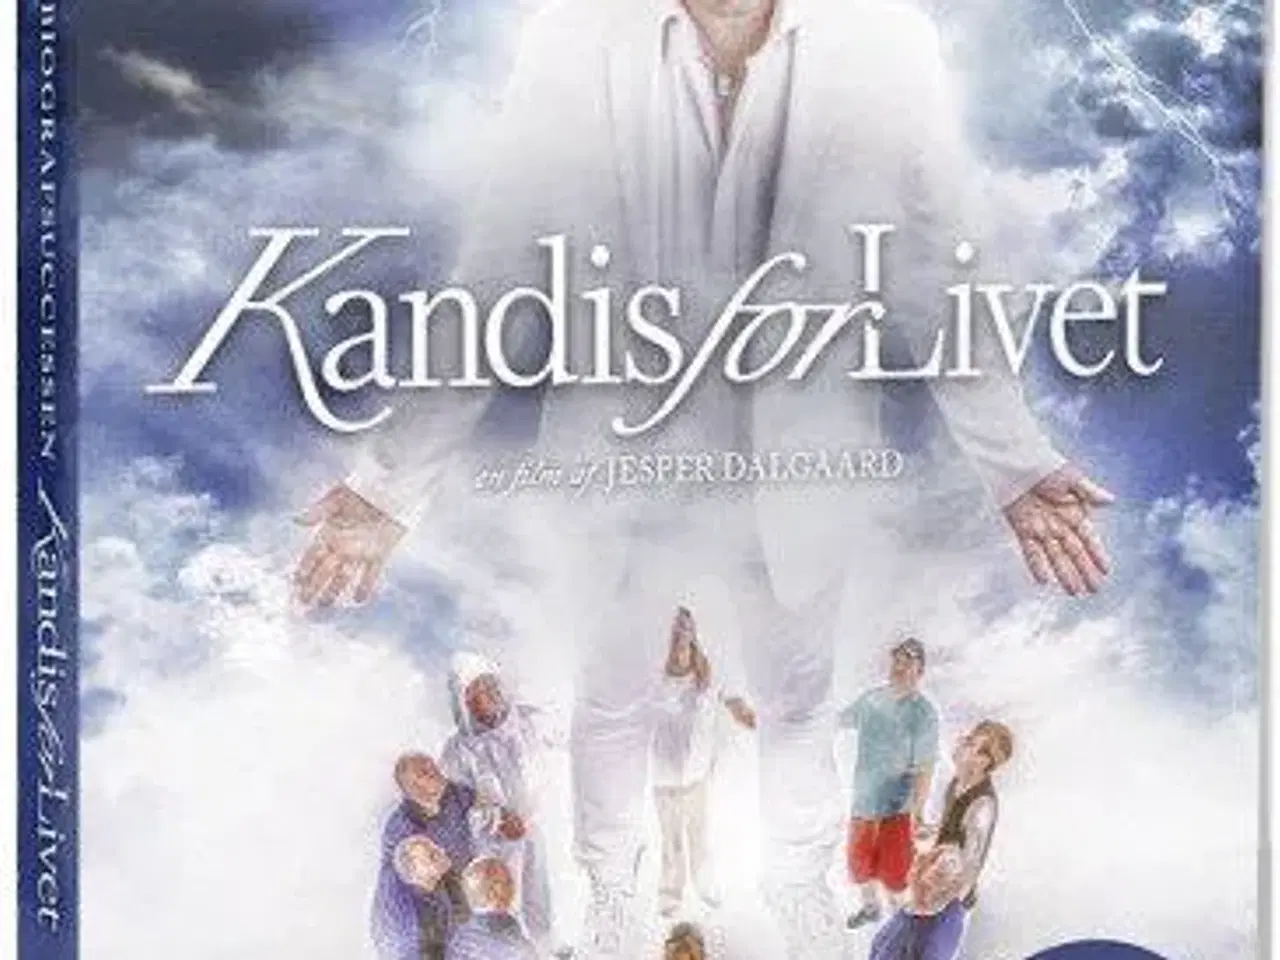 Billede 1 - DVD & CD ; KANDIS for livet ; Ny !